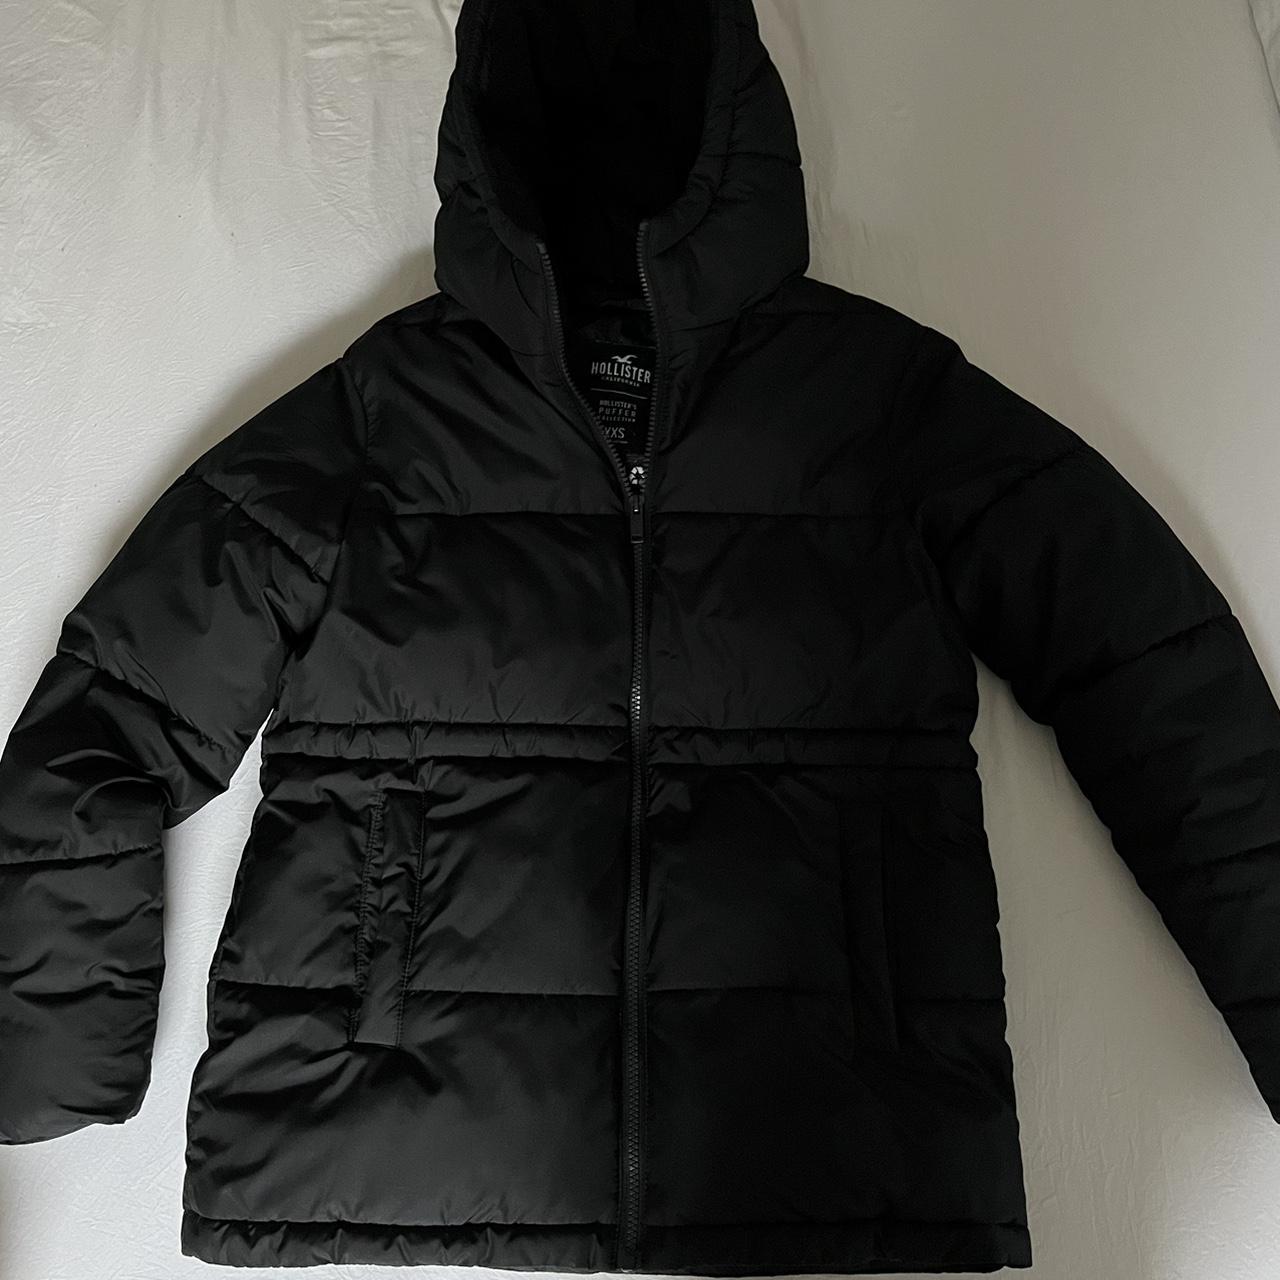 Black Hollister puffer jacket - worn twice - like... - Depop